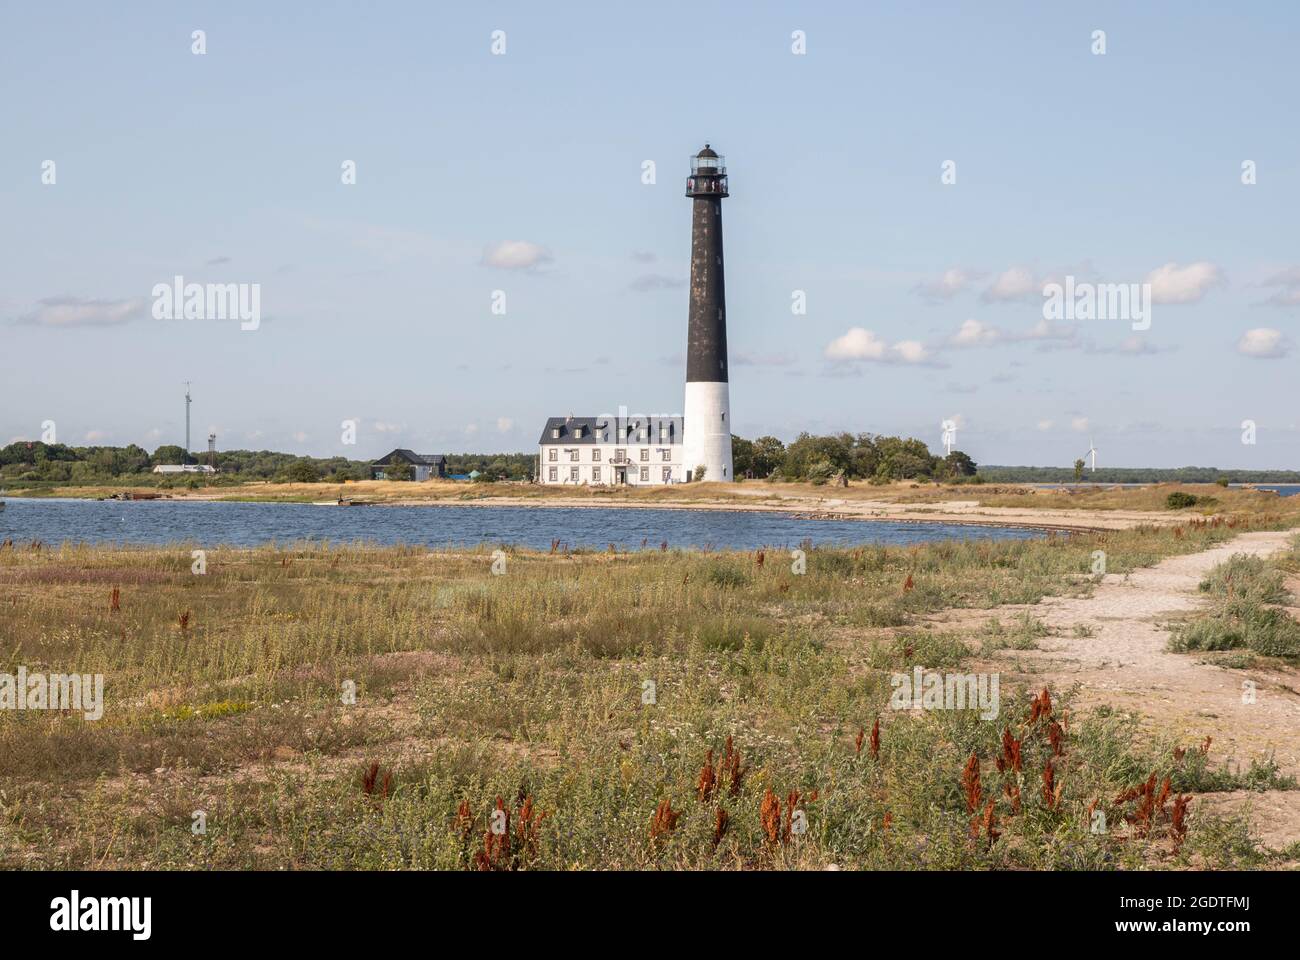 Sõrve lighthouse in Saaremaa, Estonia Stock Photo